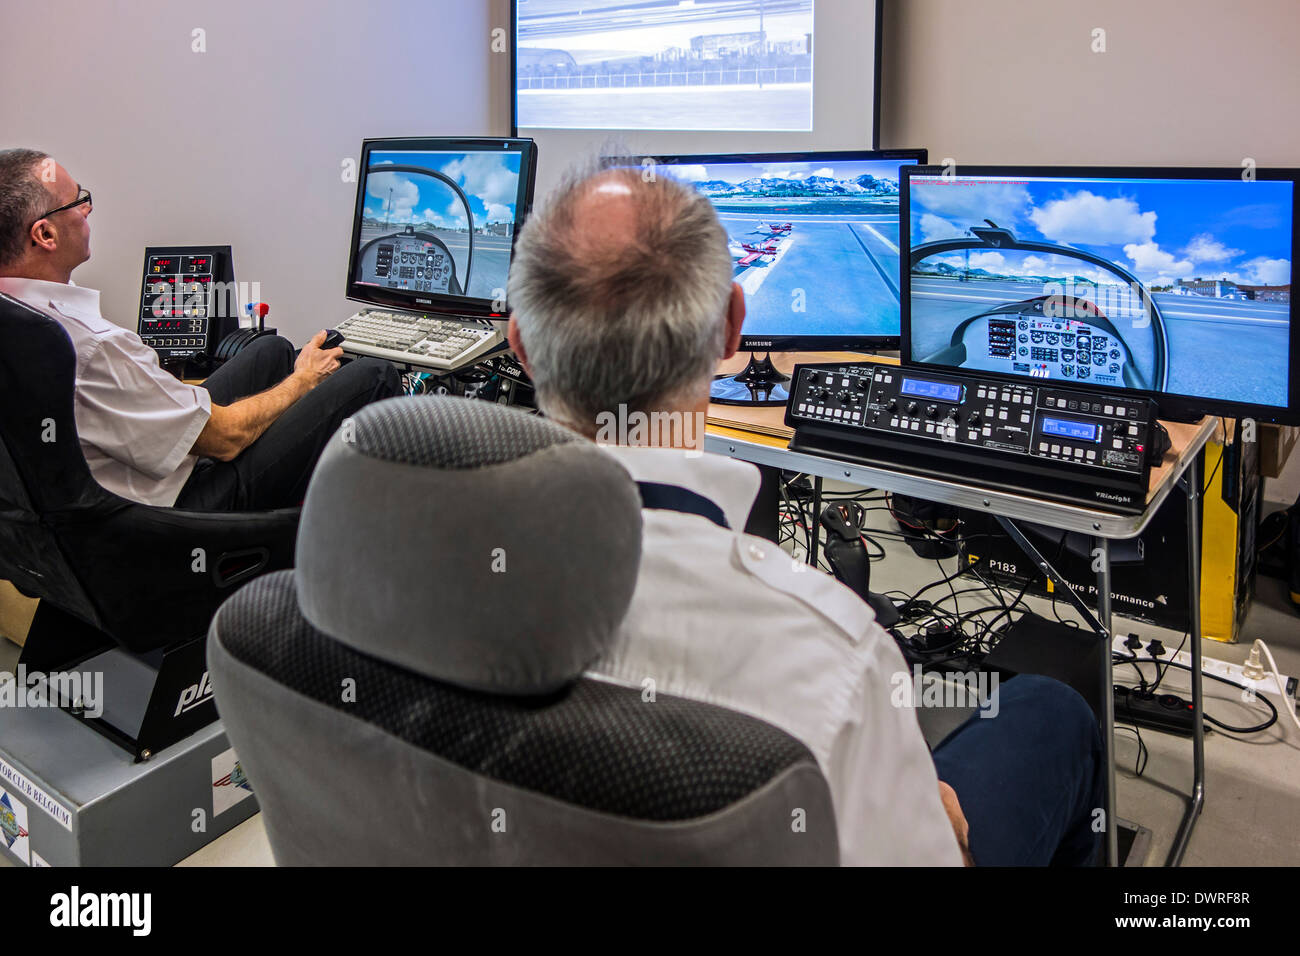 Deux hommes naviguant dans les avions virtuel simulateur de vol amateur sur des ordinateurs personnels Banque D'Images